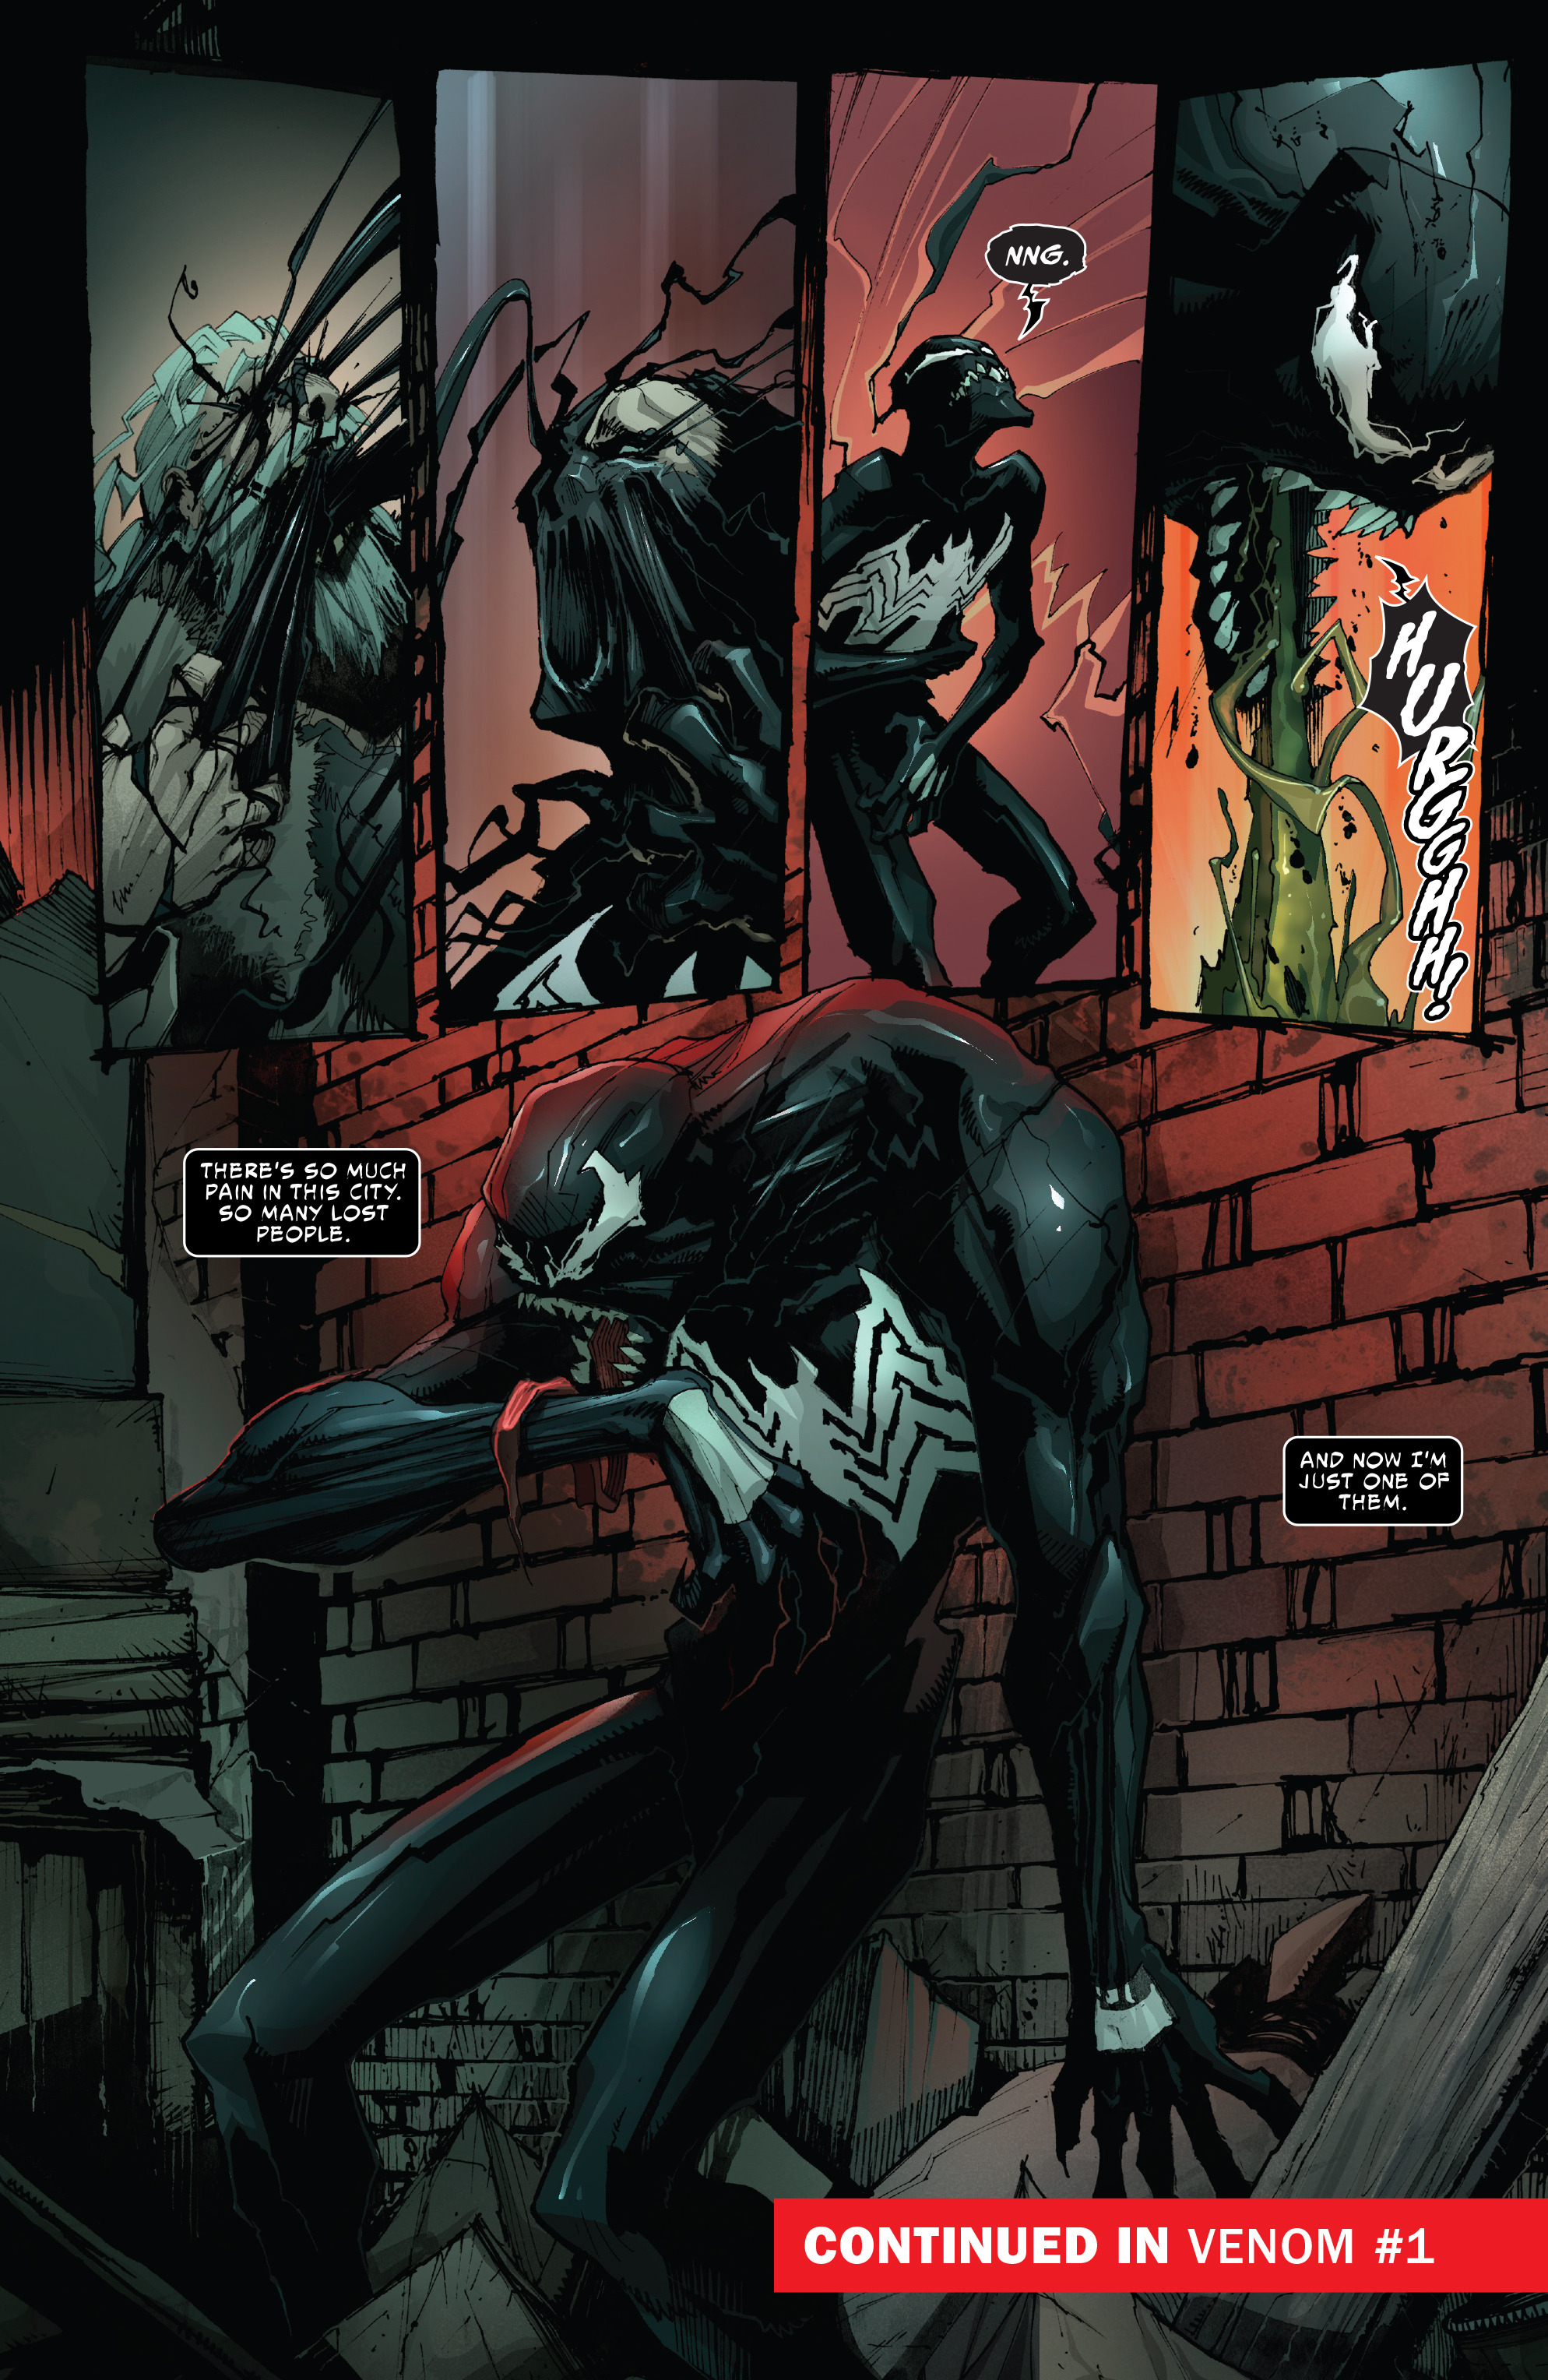 Читать комикс 10. Симбионт Бэтмен. Веном 1 симбиот. Batman Веном. Бэтмен и Веном.